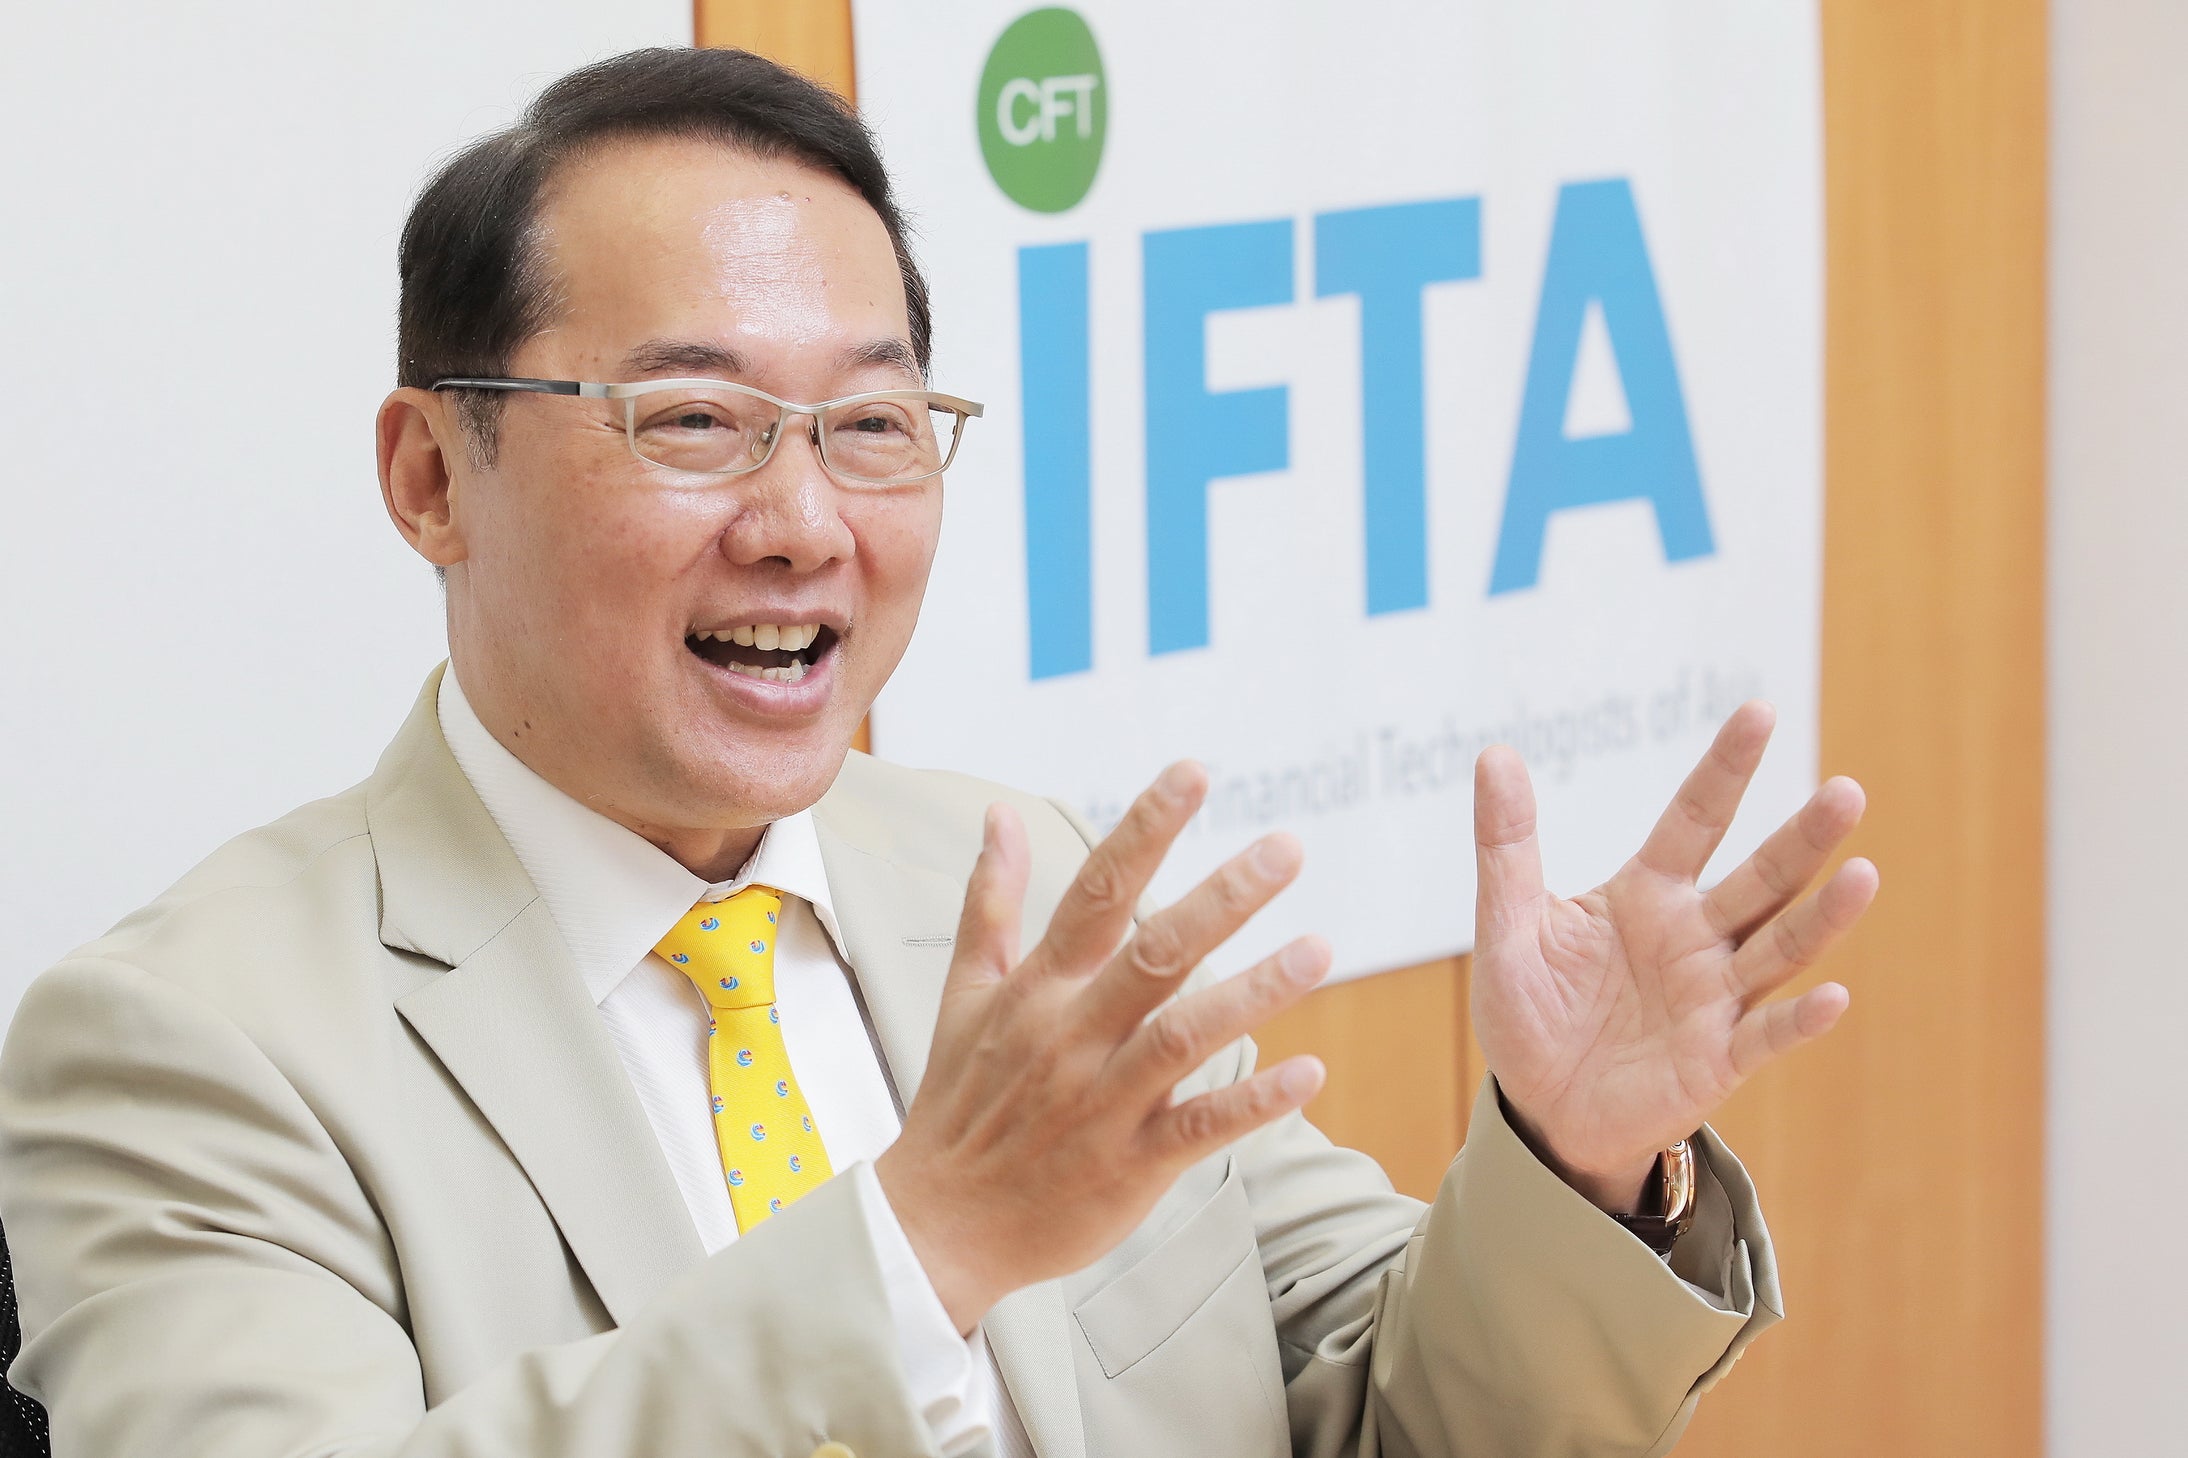 【信報】冀課程媲美CFA獲認可 IFTA連結金融與科技